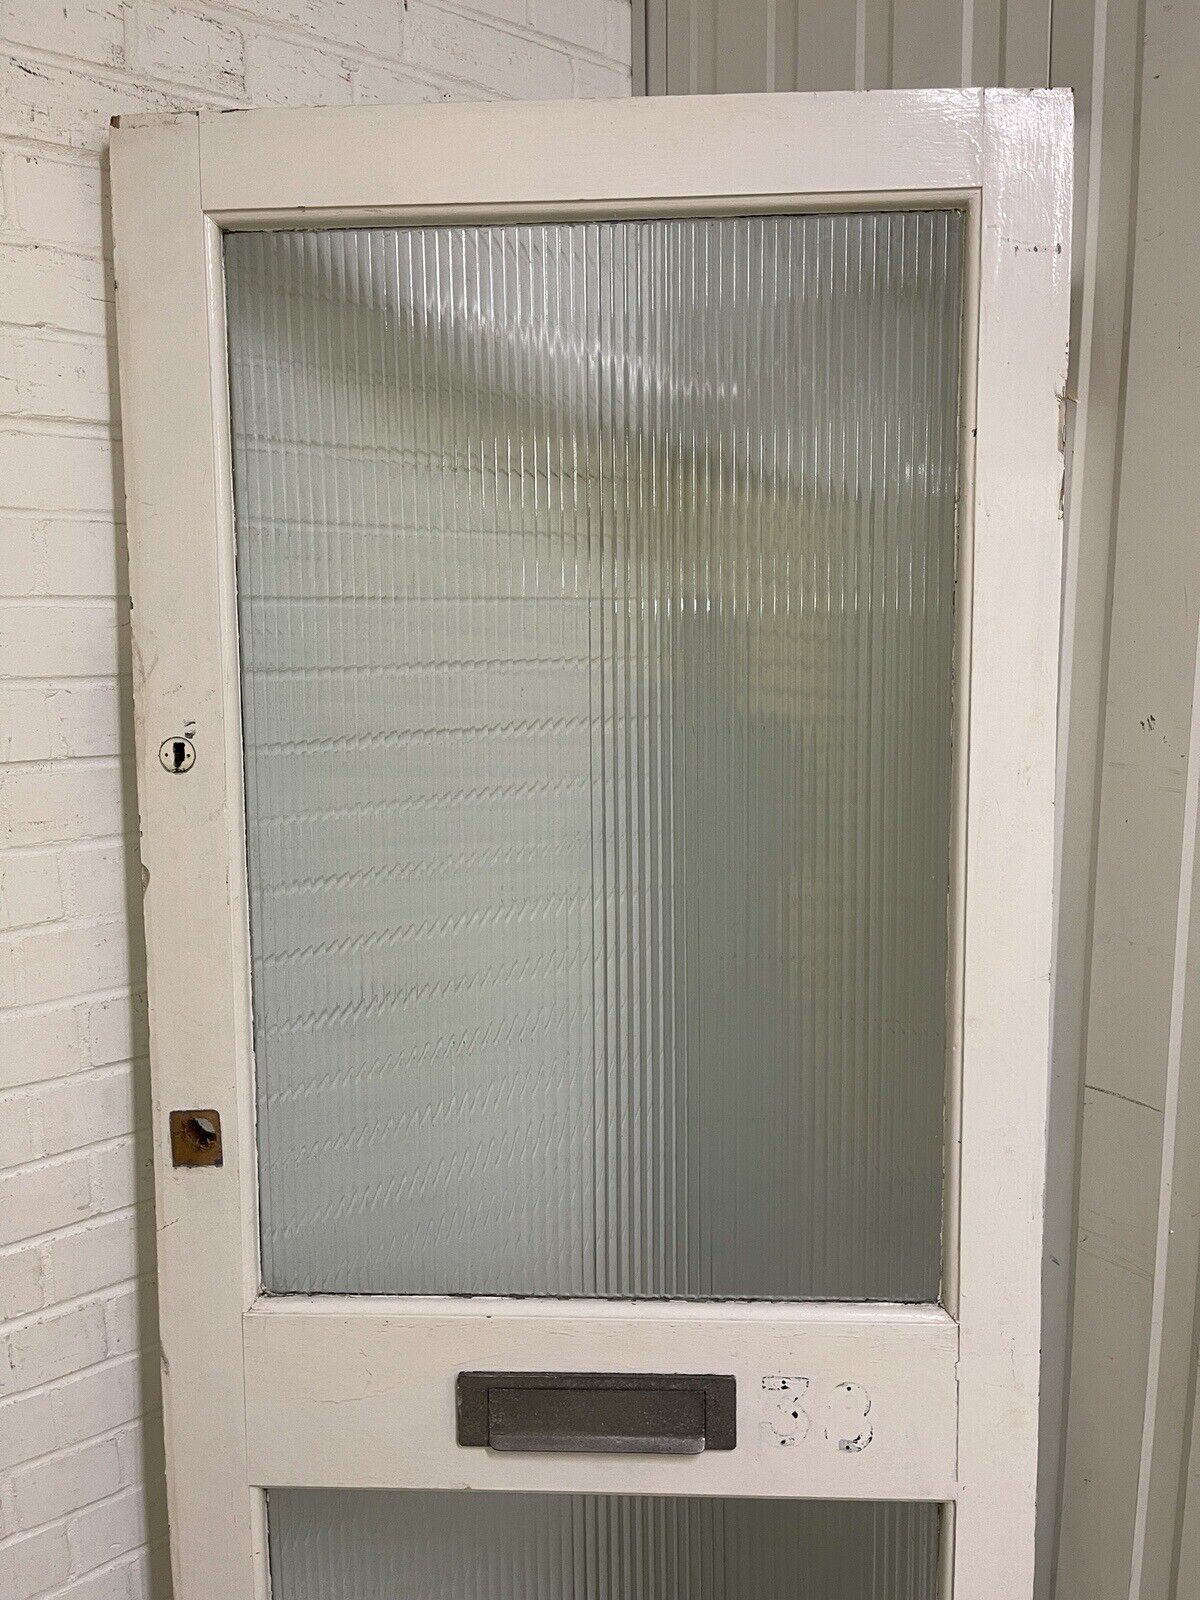 Reclaimed Reeded Glass External Door 1950 x 840mm